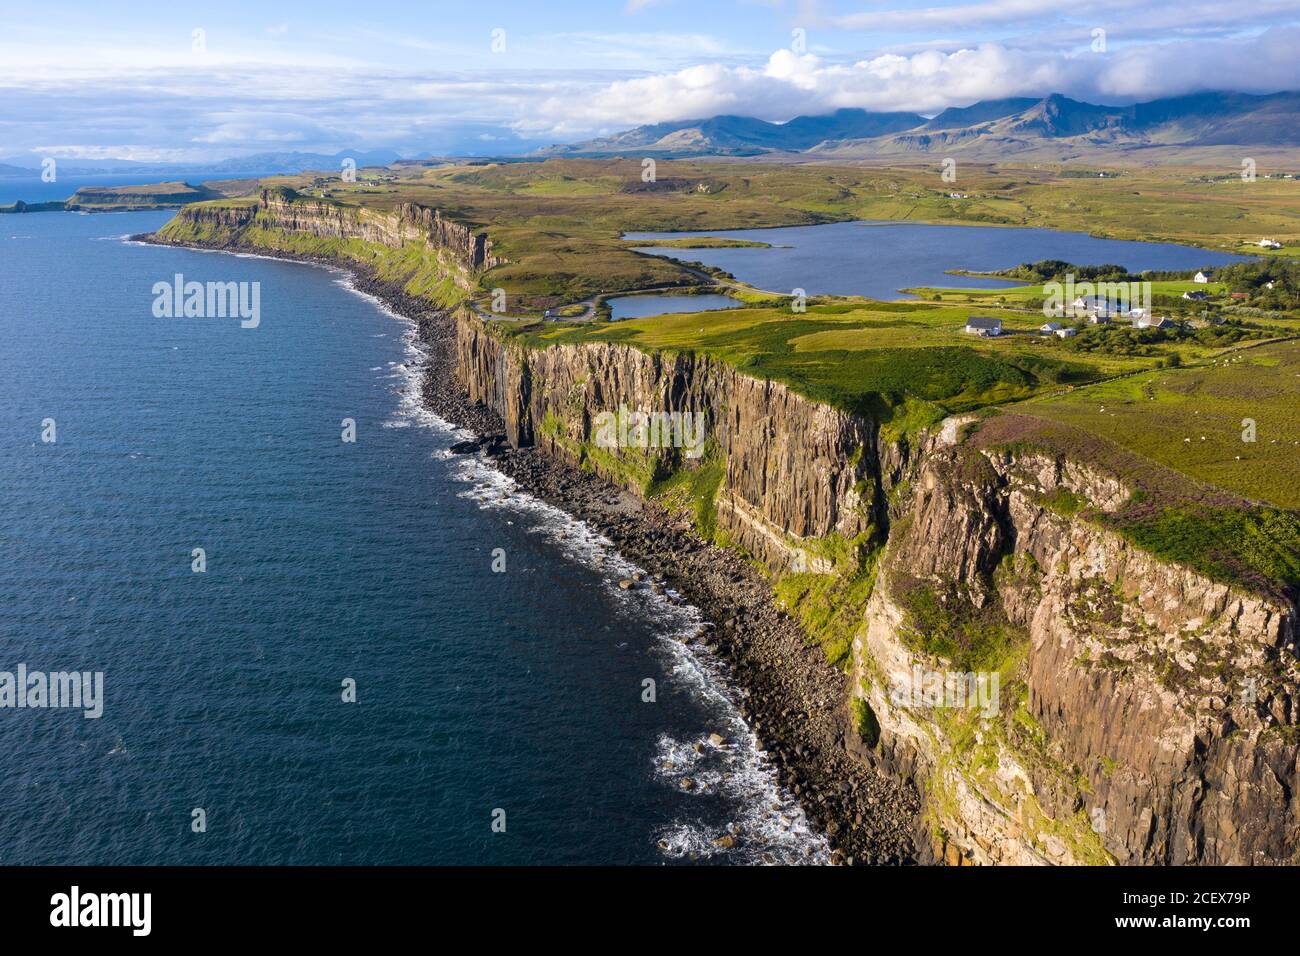 Luftaufnahme der Meeresklippen Kilt Rock bei Staffin auf der Halbinsel Trotternish auf der Isle of Skye, Schottland, Großbritannien Stockfoto